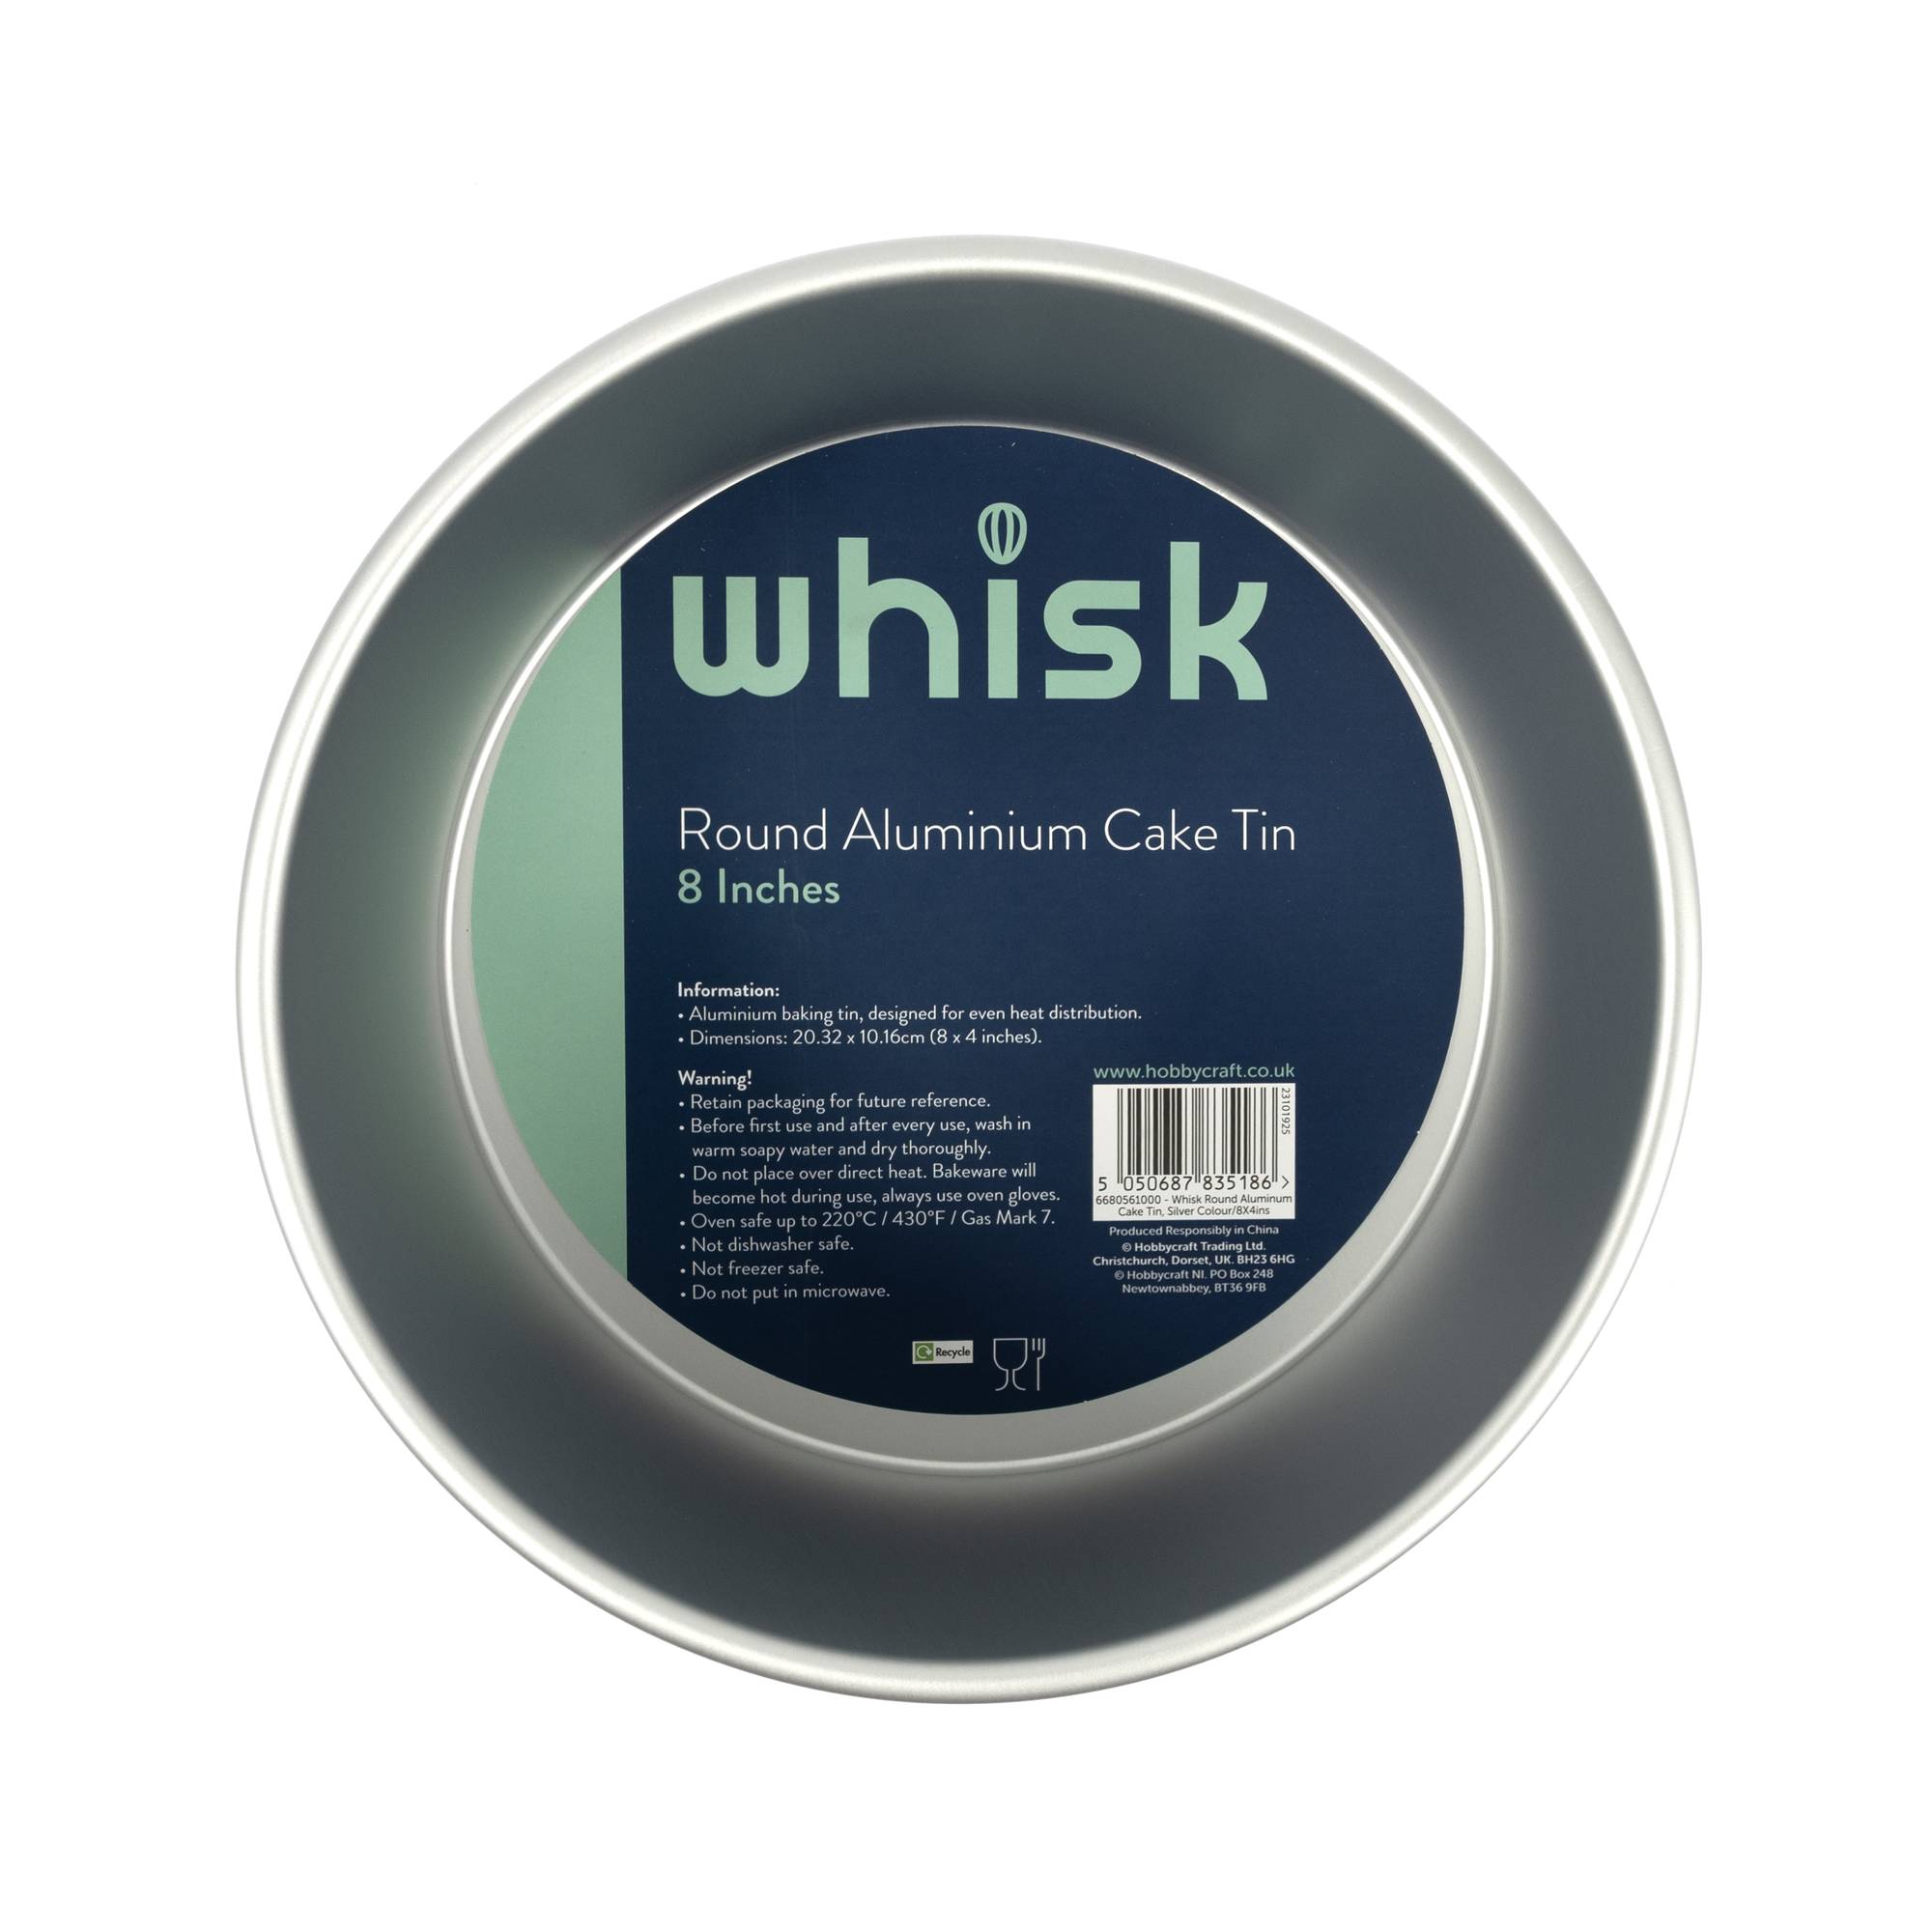 Whisk Round Aluminium Cake Tin 8 x 4 Inches